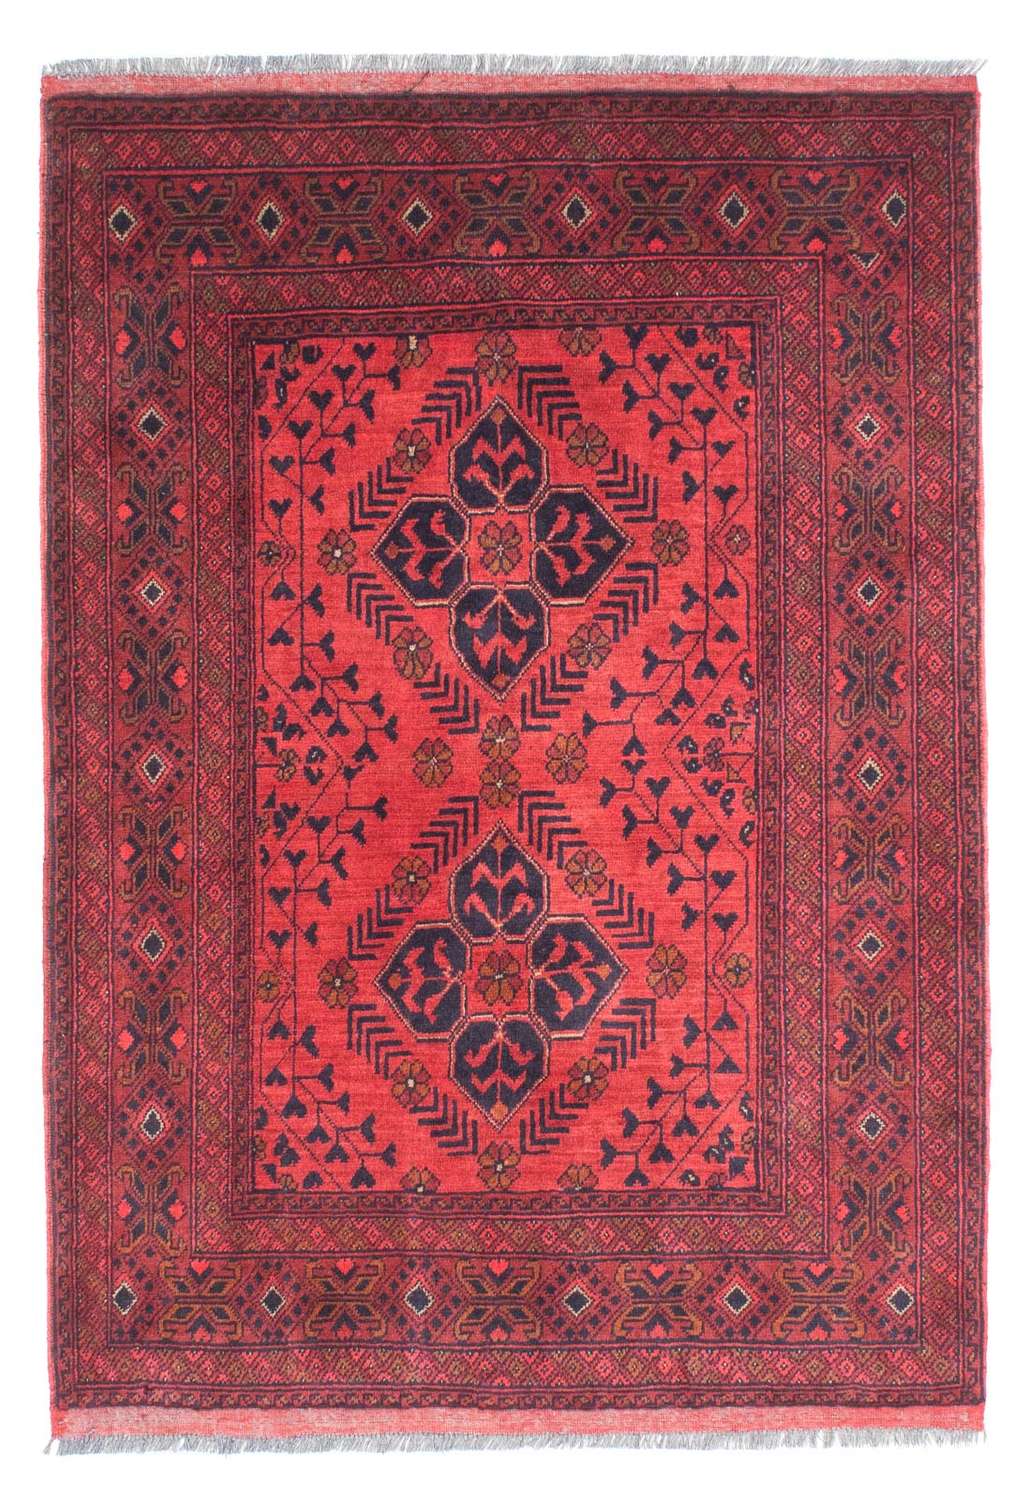 Tapis afghan - Kunduz - 146 x 104 cm - rouge foncé